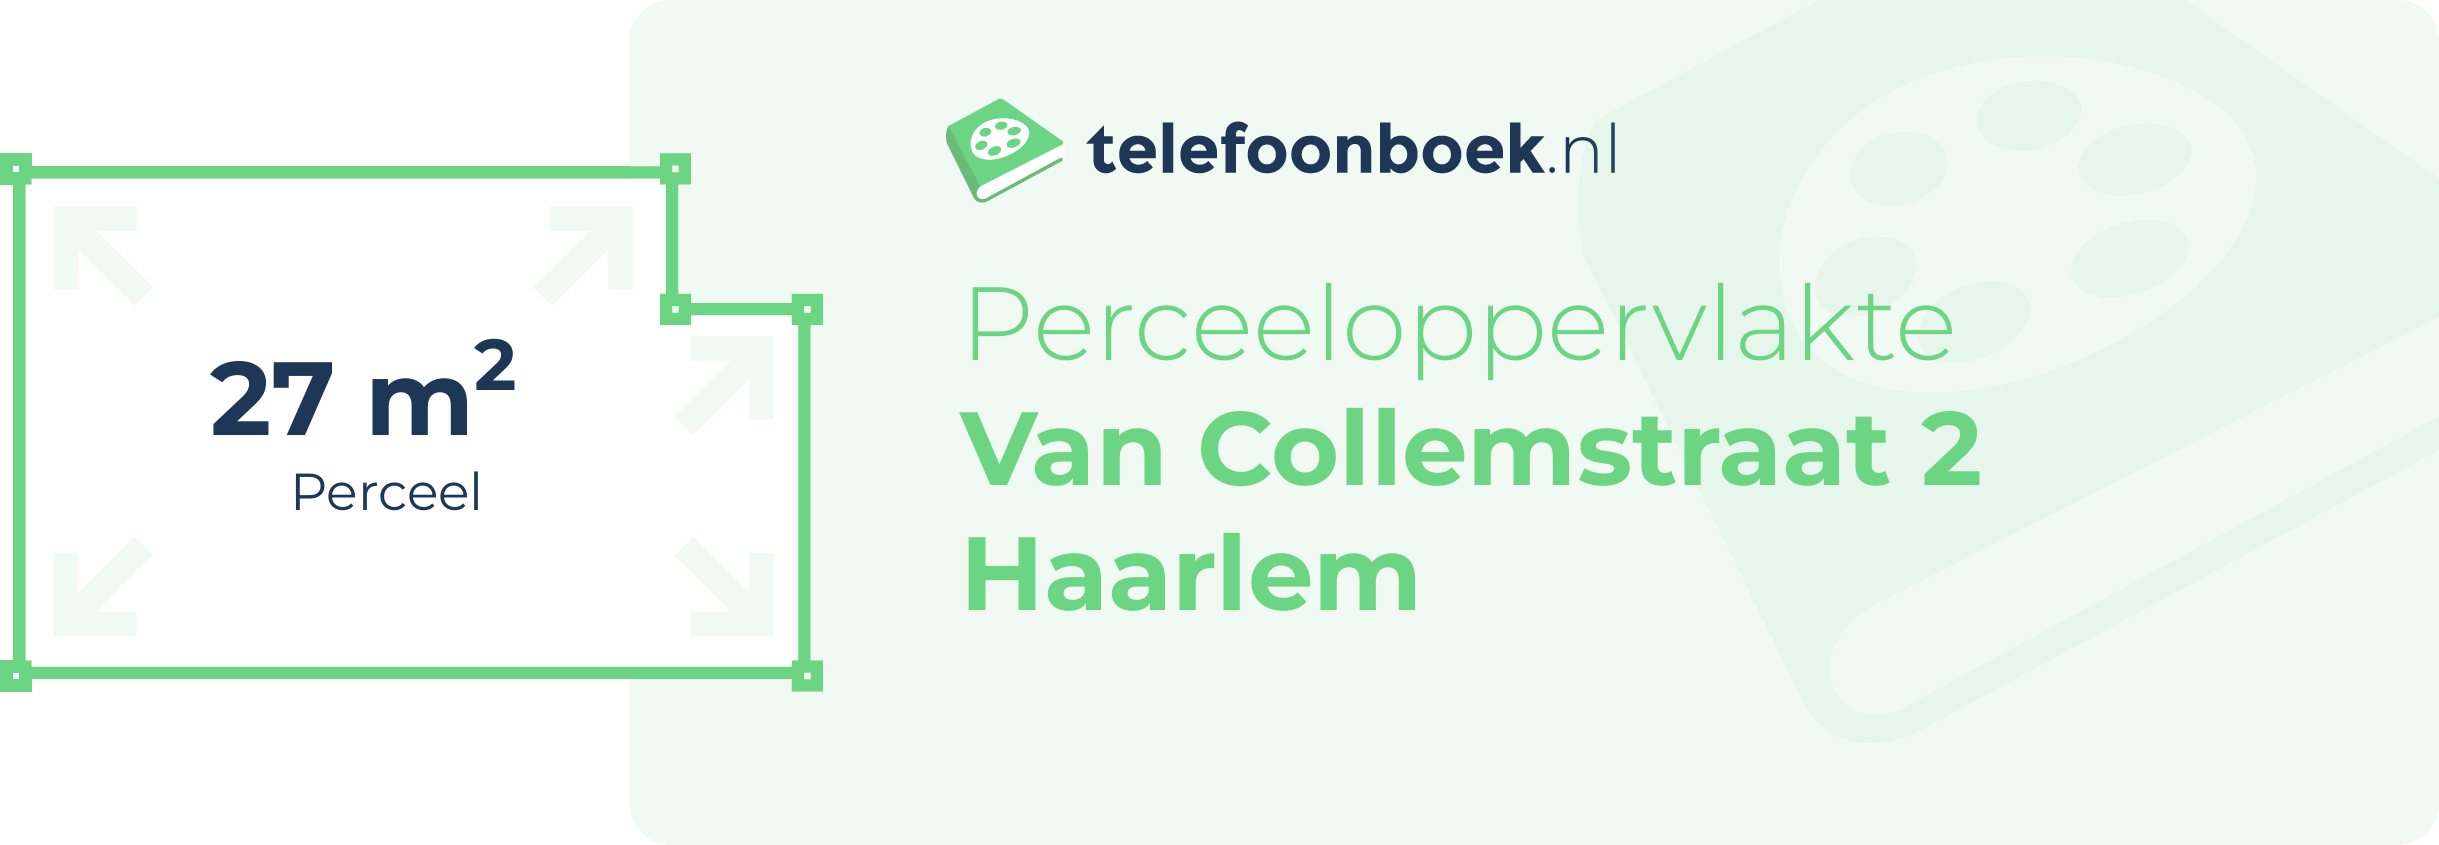 Perceeloppervlakte Van Collemstraat 2 Haarlem